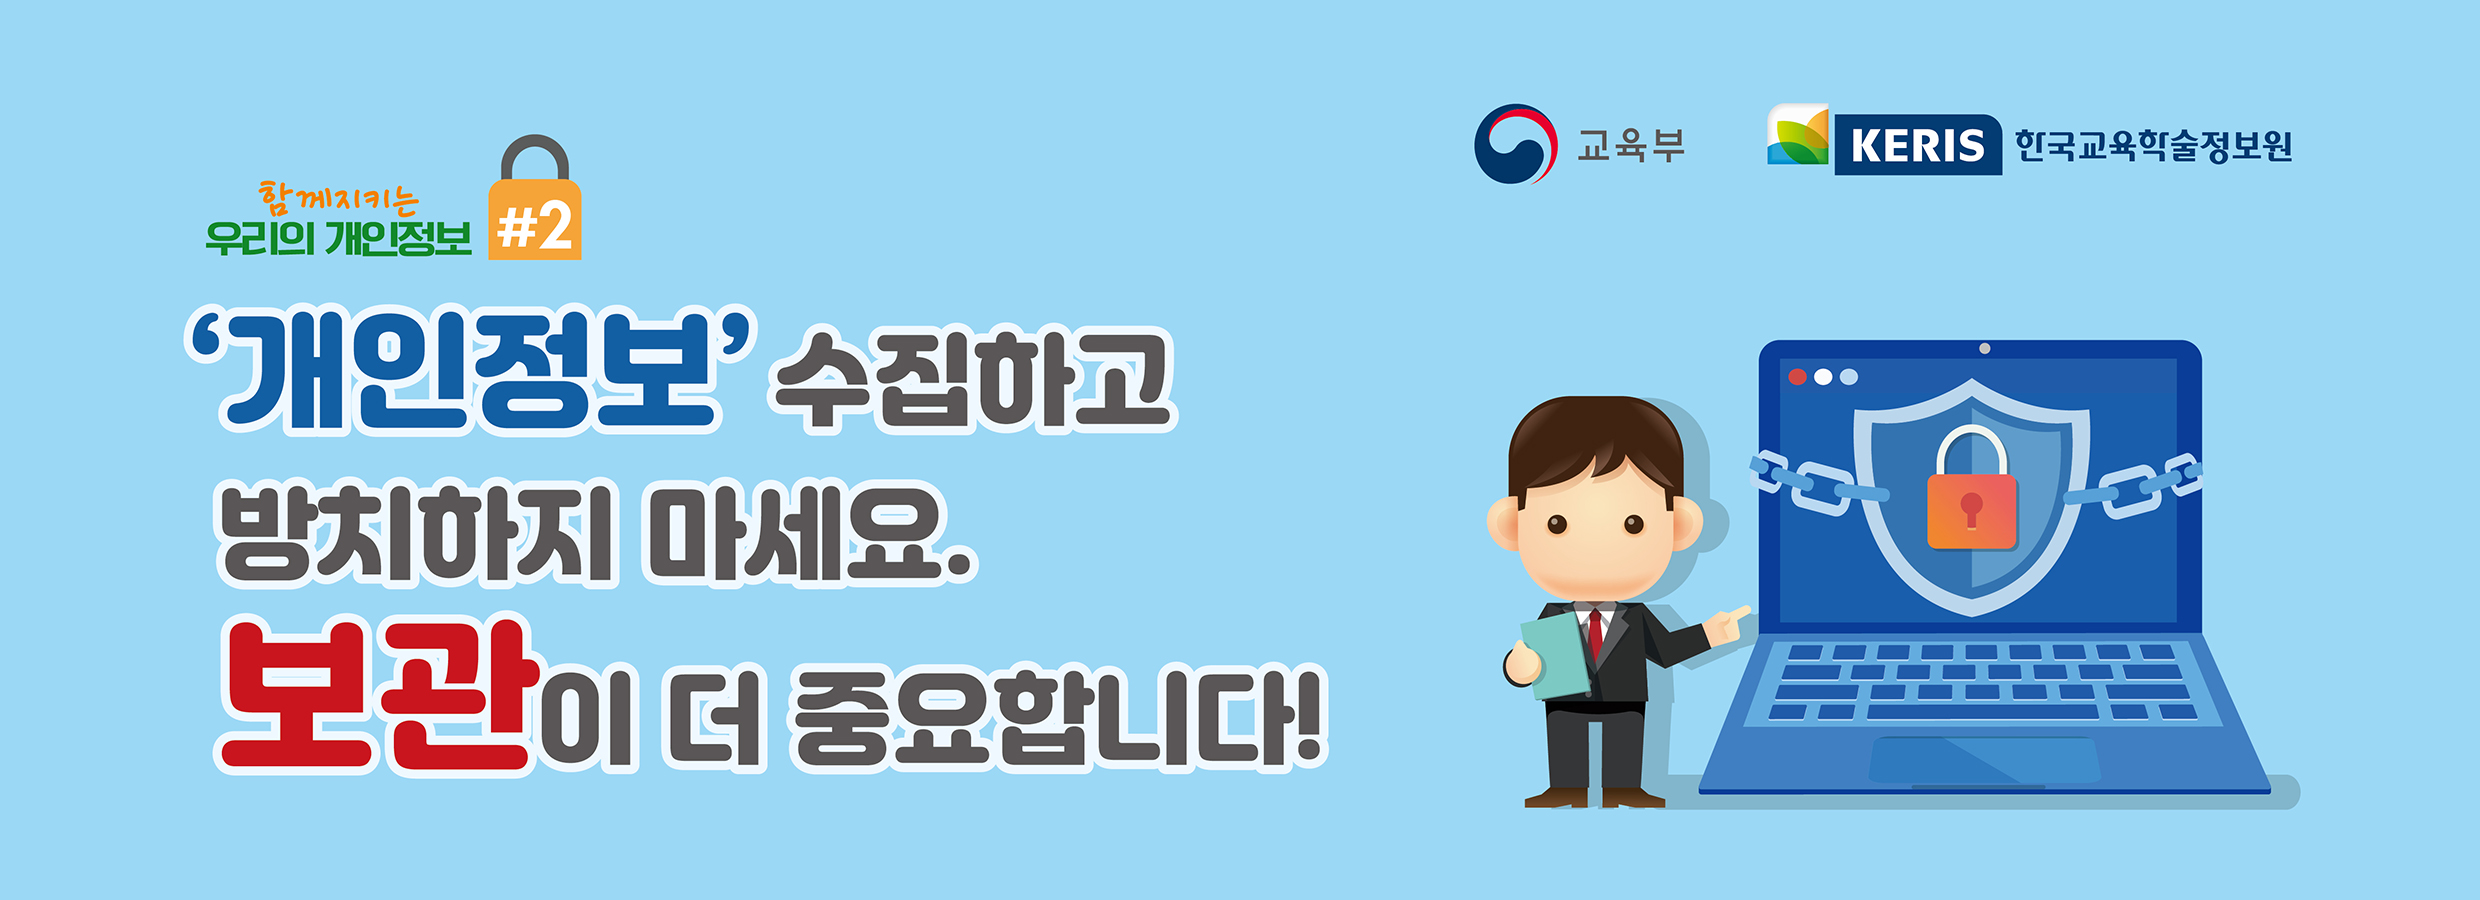 개인정보 보관 홍보 배너 아이콘